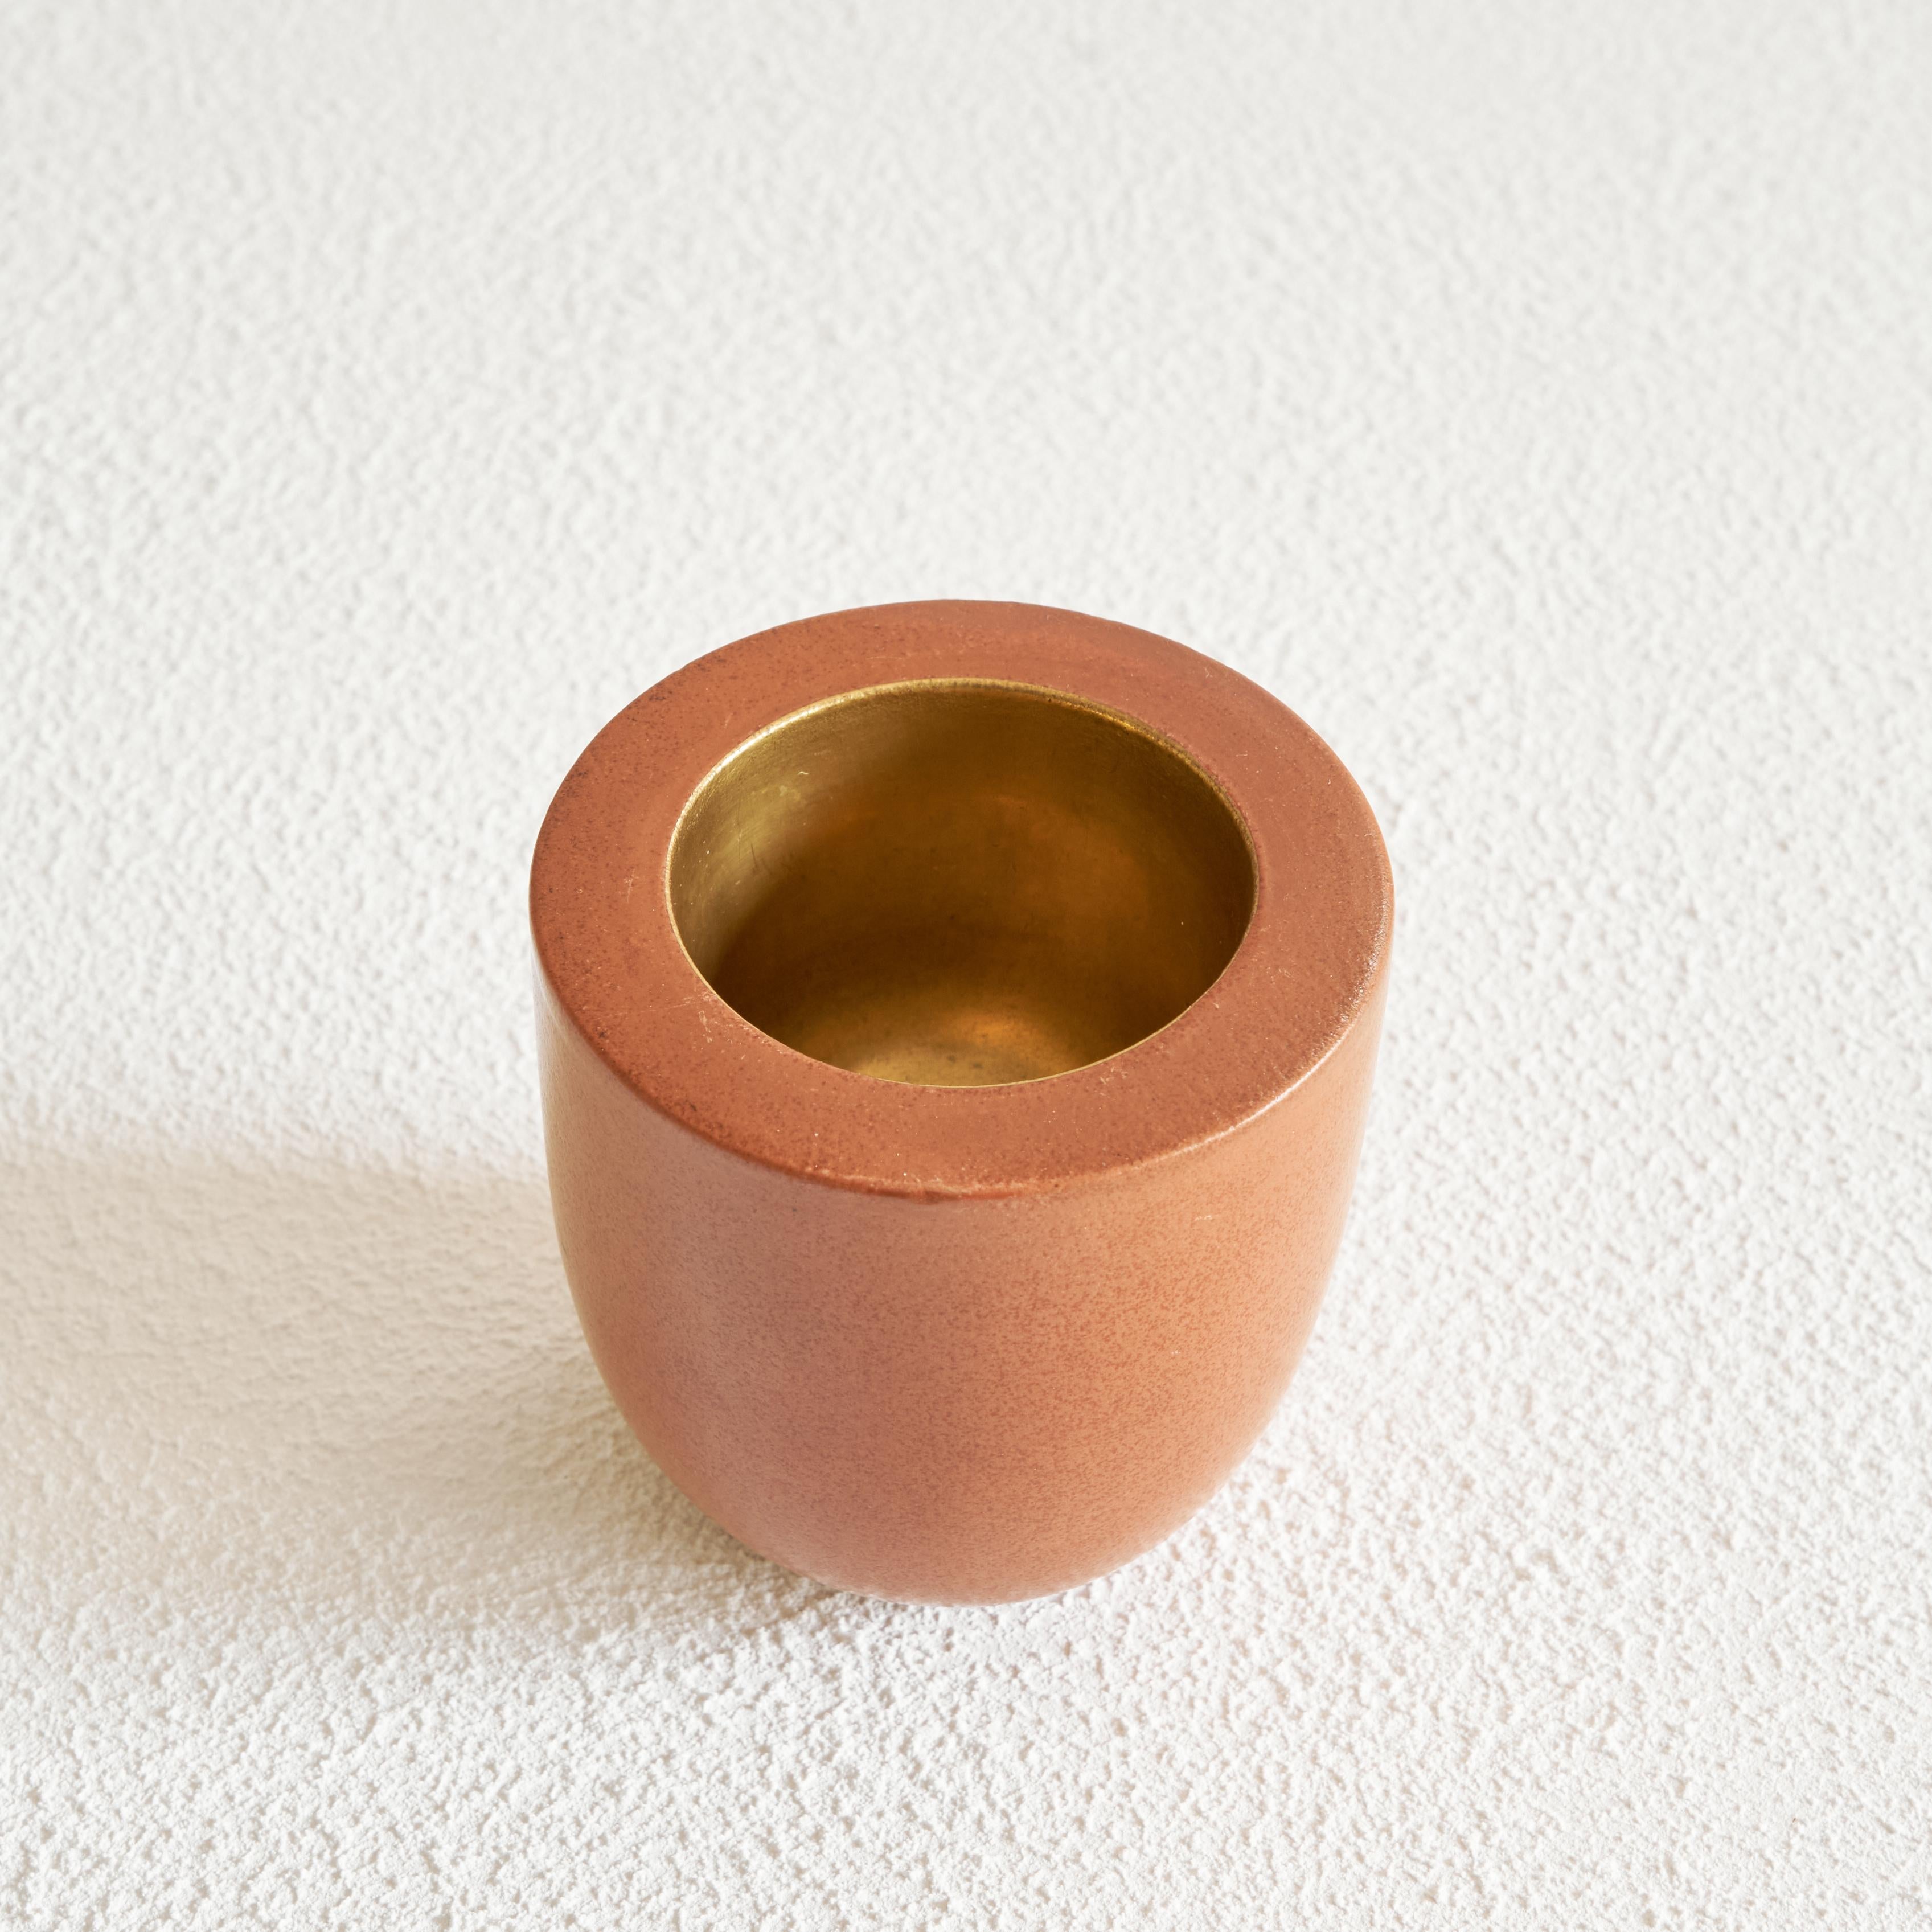 Vase aus Terrakotta und Gold, Gio Ponti für Richard Ginori, Italien, 1930er Jahre.

Diese Vase, die von Gio Ponti entworfen und von Richard Ginori in den 1930er Jahren hergestellt wurde, ist ein wunderbares kleines Schmuckstück. Tolles einfaches